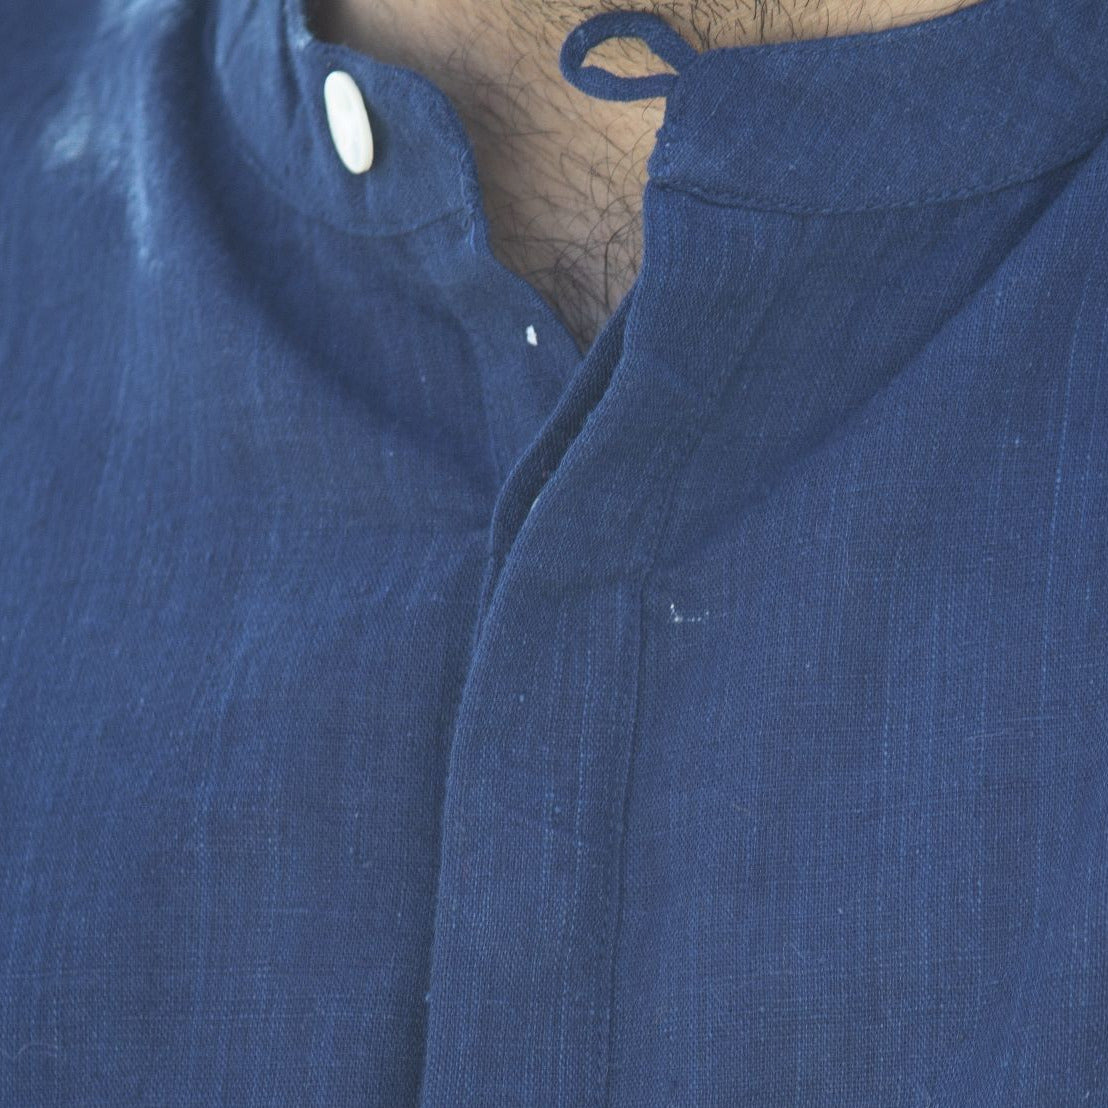 Malkha Handspun Cotton Unisex Shirt Indigo BlueWearable Stitched Garme Textile  Weavingnt